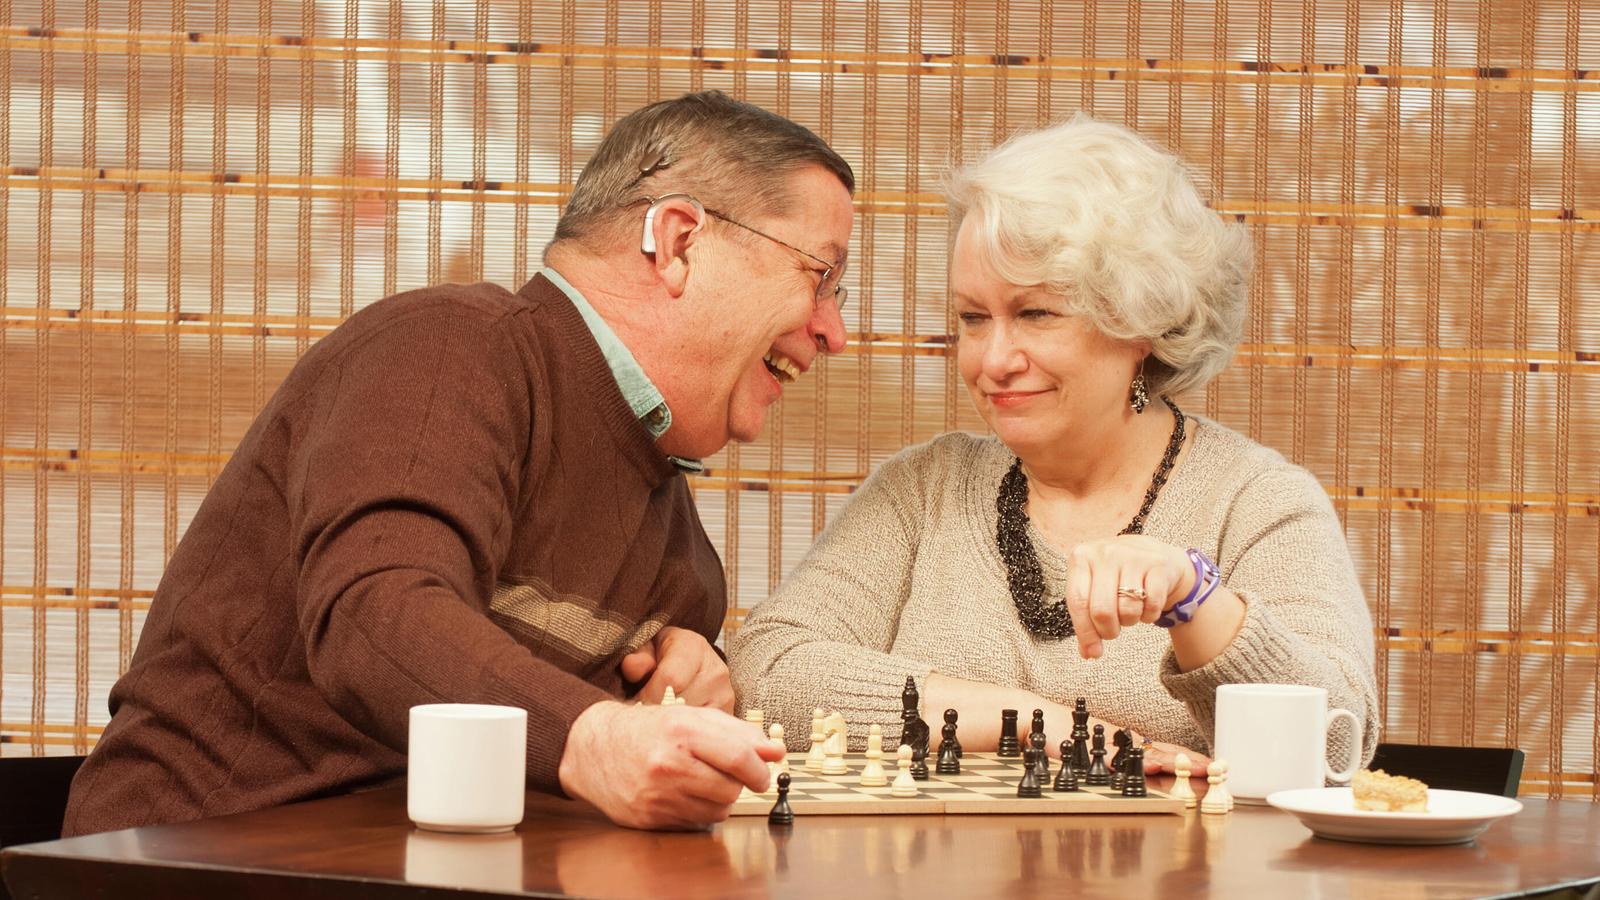 المتلقي بيل وزوجته بام يقضيان وقتًا ممتعًا في لعب الشطرنج